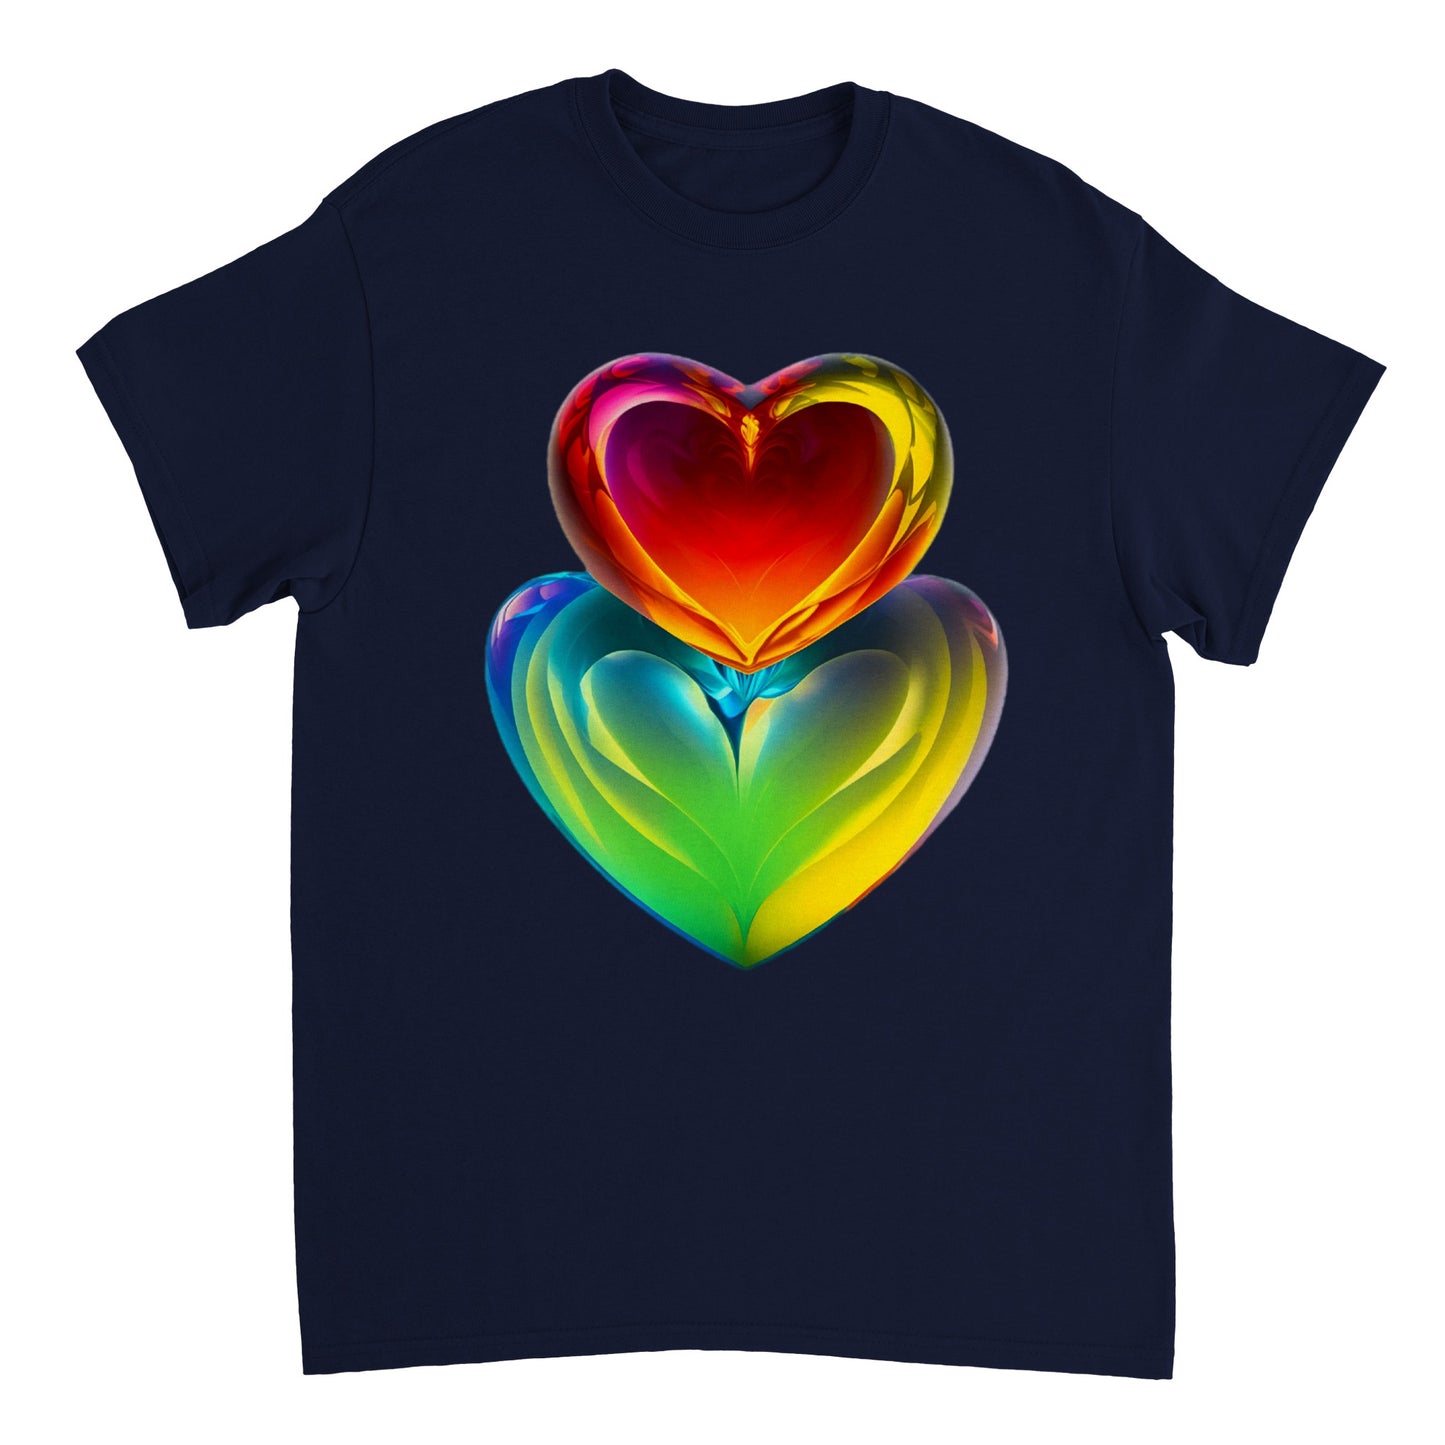 Love Heart - Heavyweight Unisex Crewneck T-shirt 108